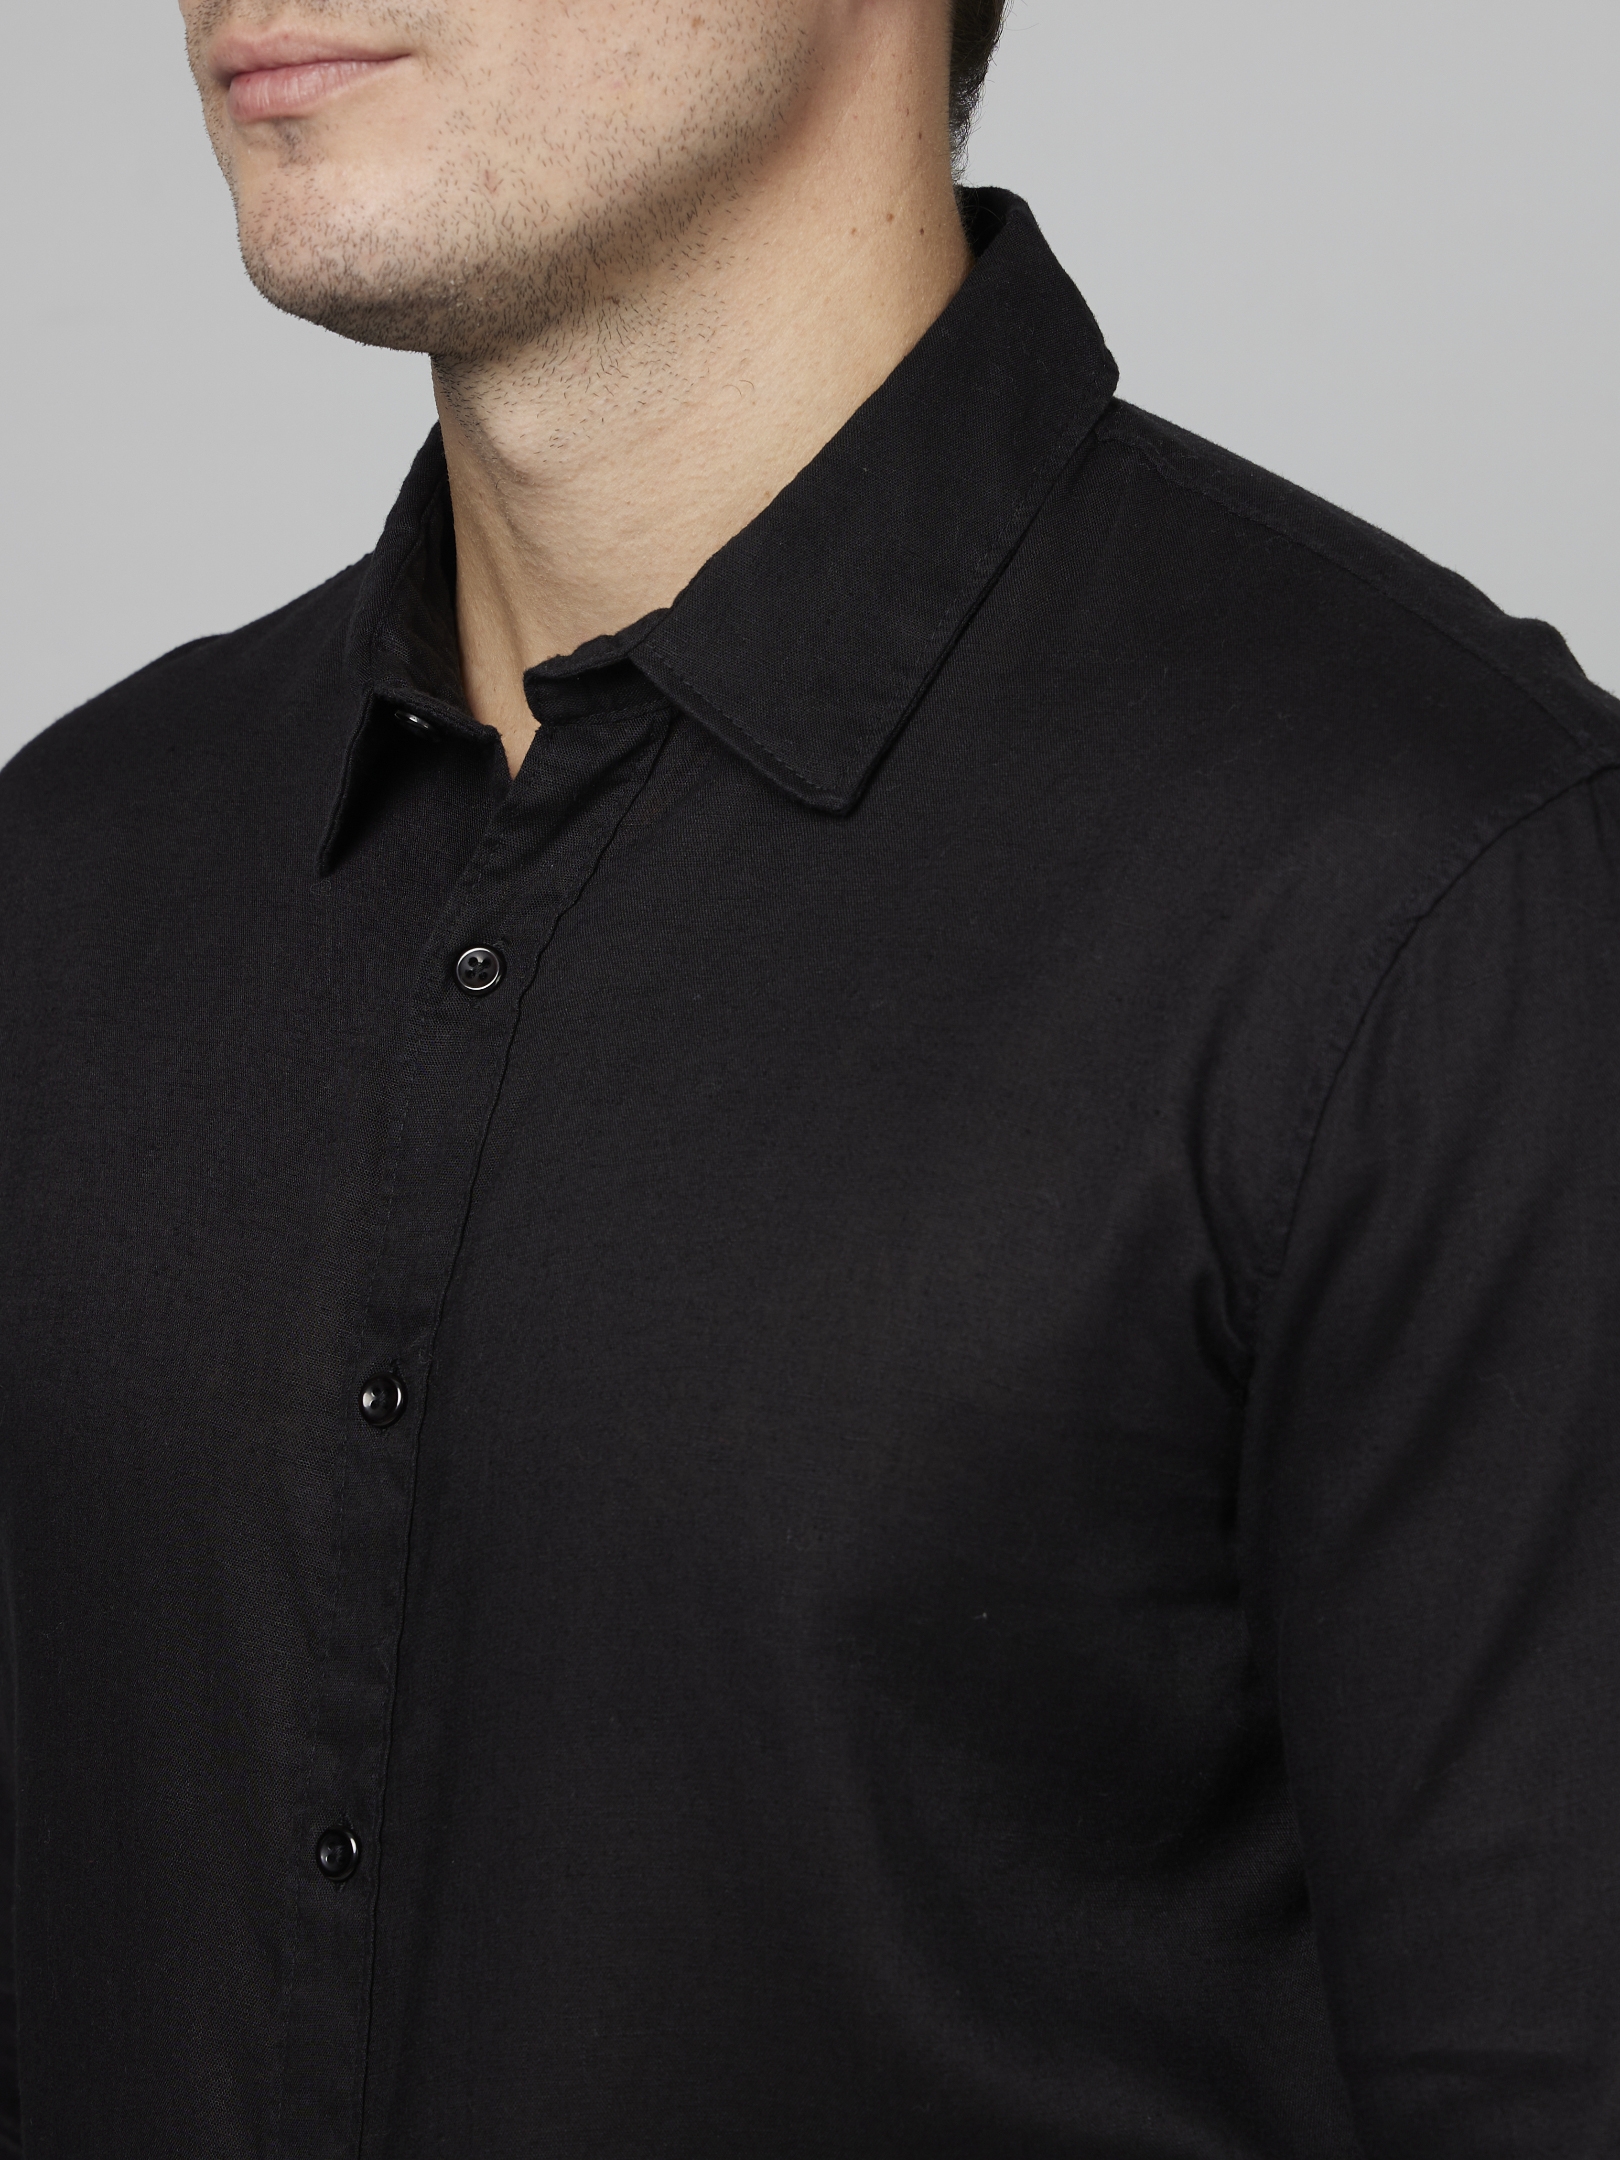 Men's Black Solid Formal Shirts